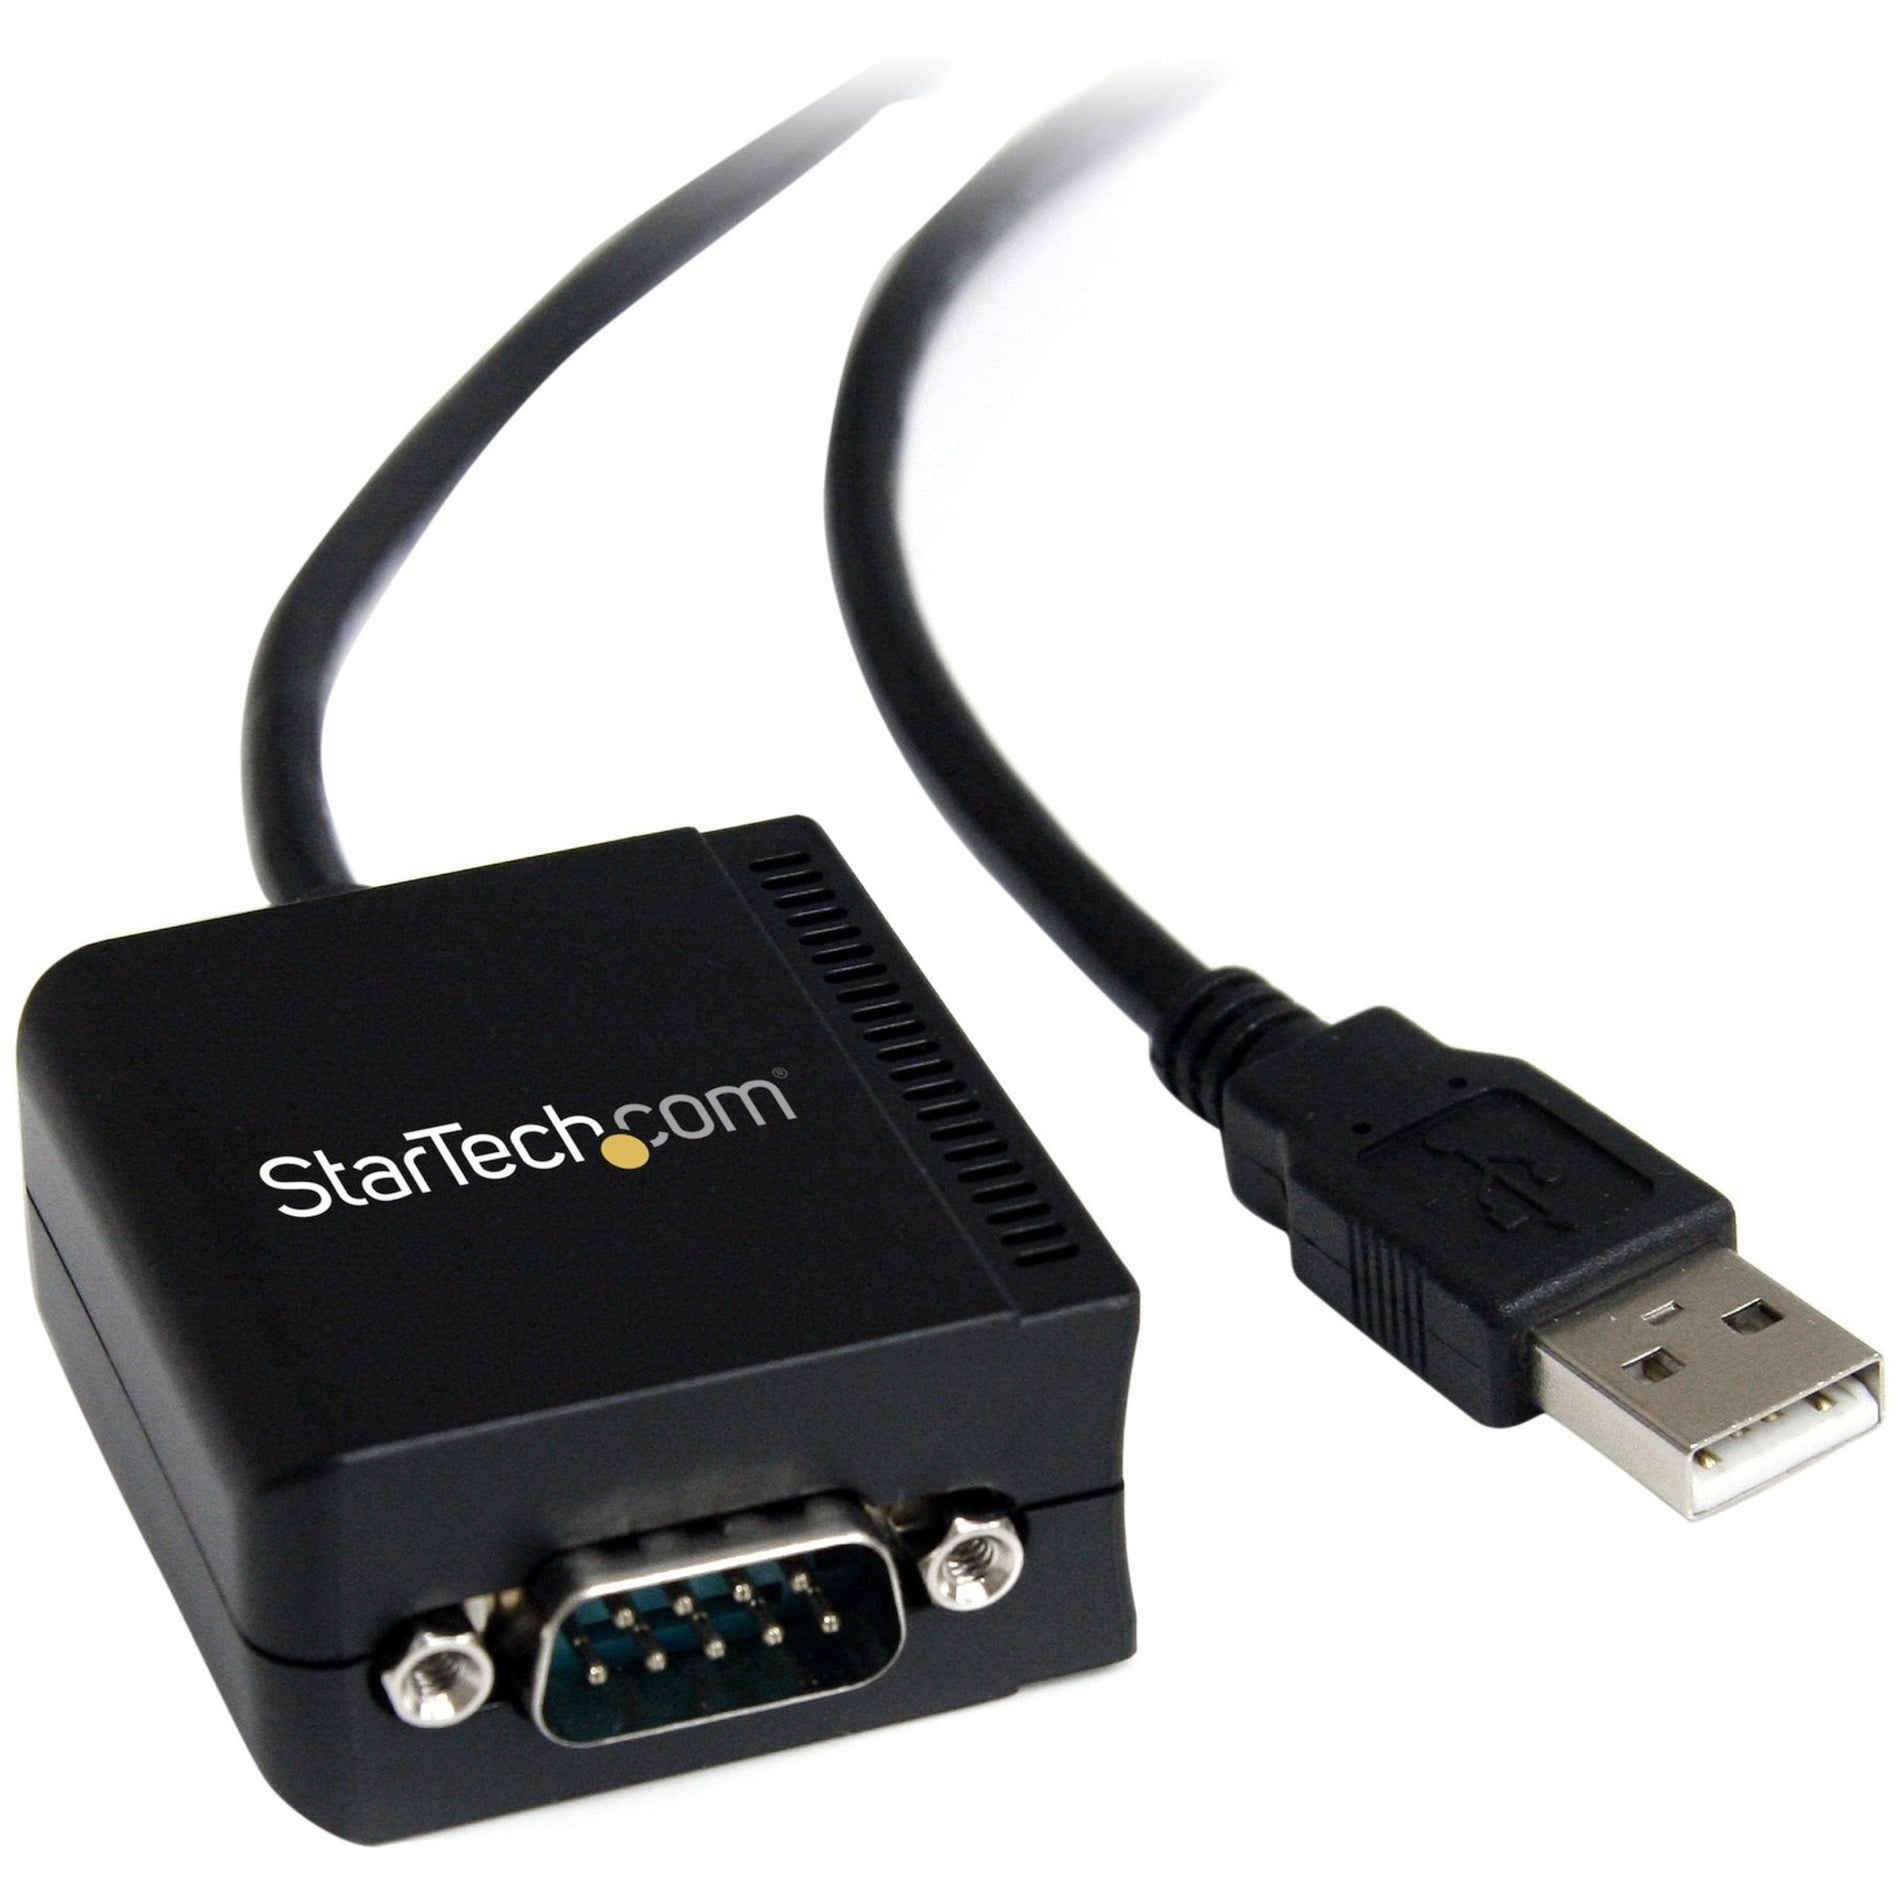 StarTech.com: ستارتك.كوم ICUSB2321FIS 1 منفذ كبل محول USB إلى تسلسلي RS232 مع عزل، حماية ضد الصدمات، طول الكابل 8.20 قدم، أسود